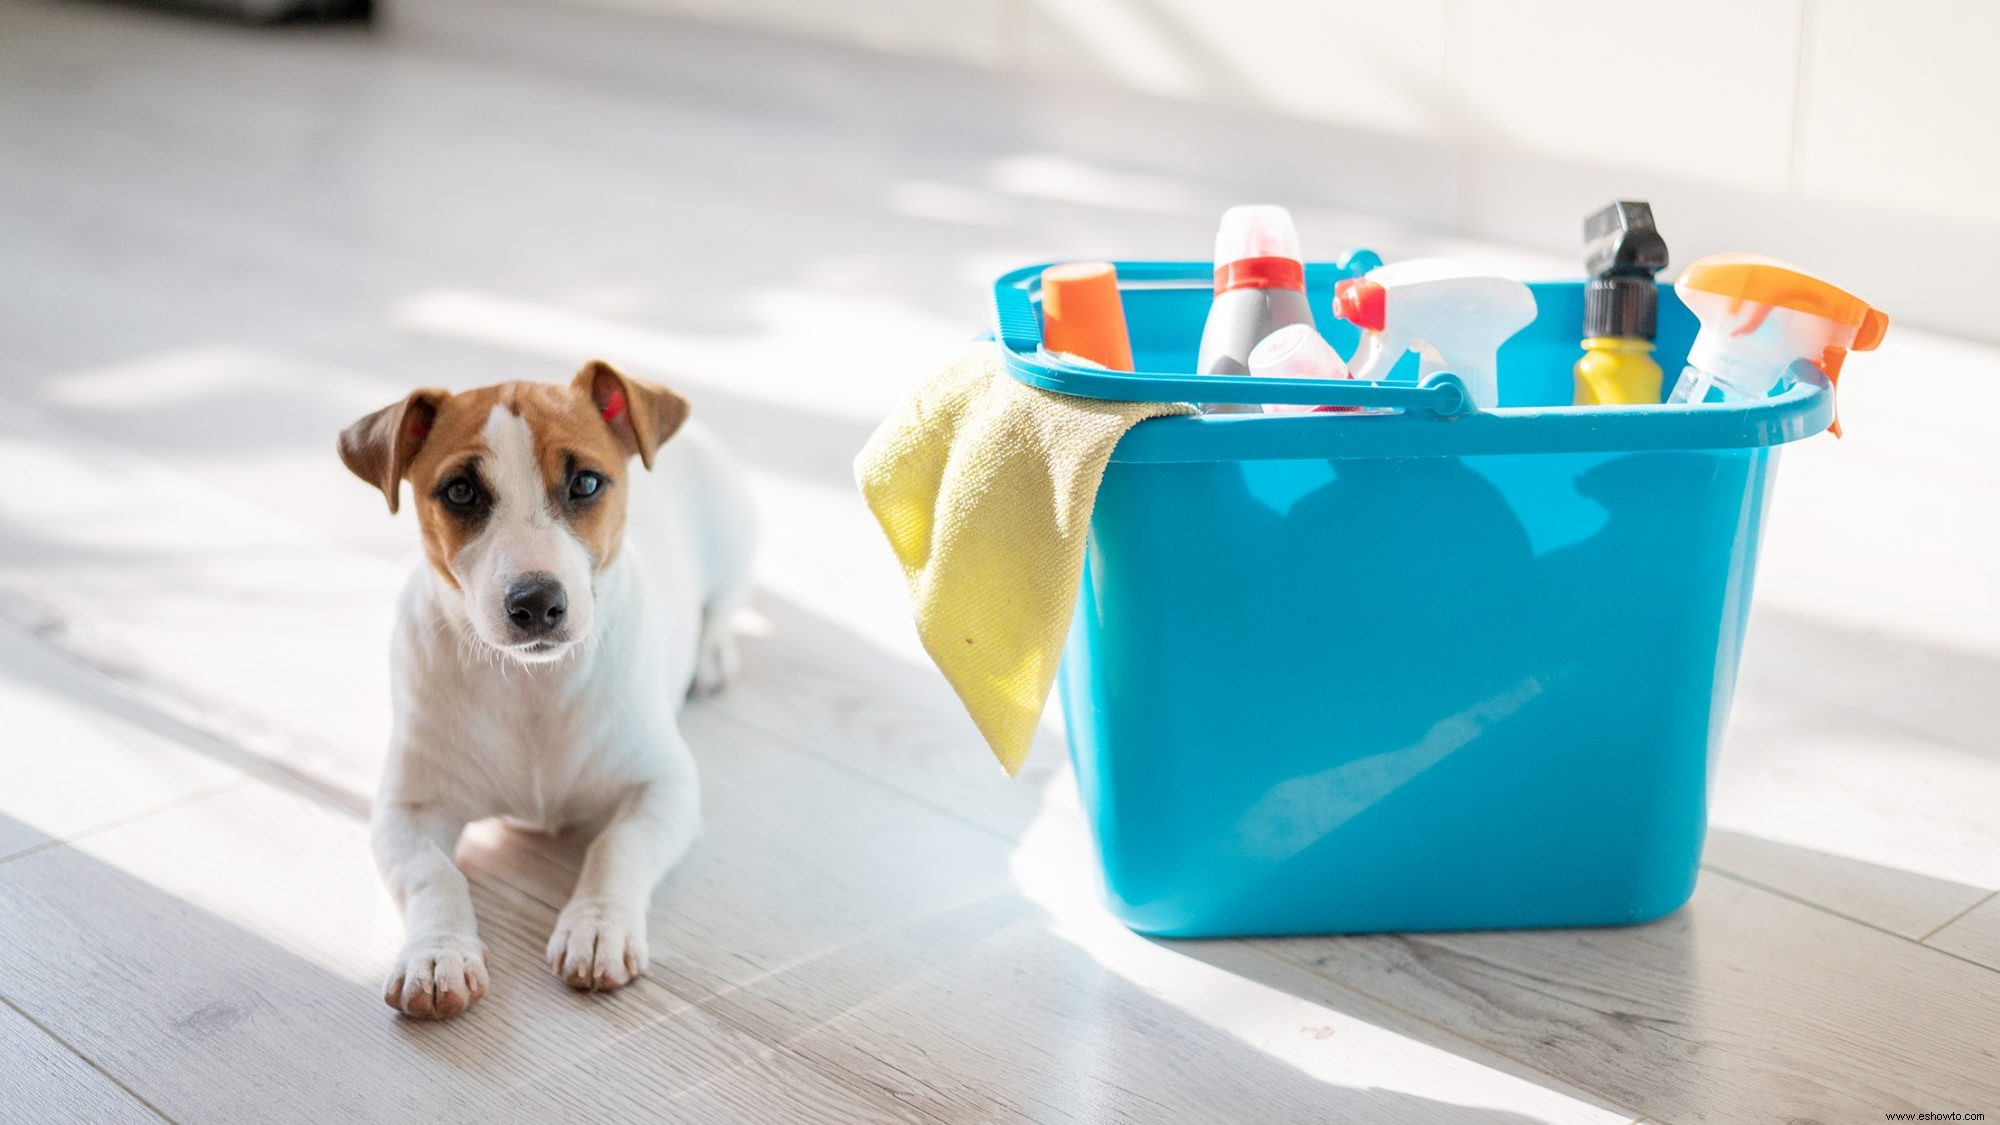 Productos de limpieza domésticos seguros para mascotas que no dañarán a tu amigo peludo 